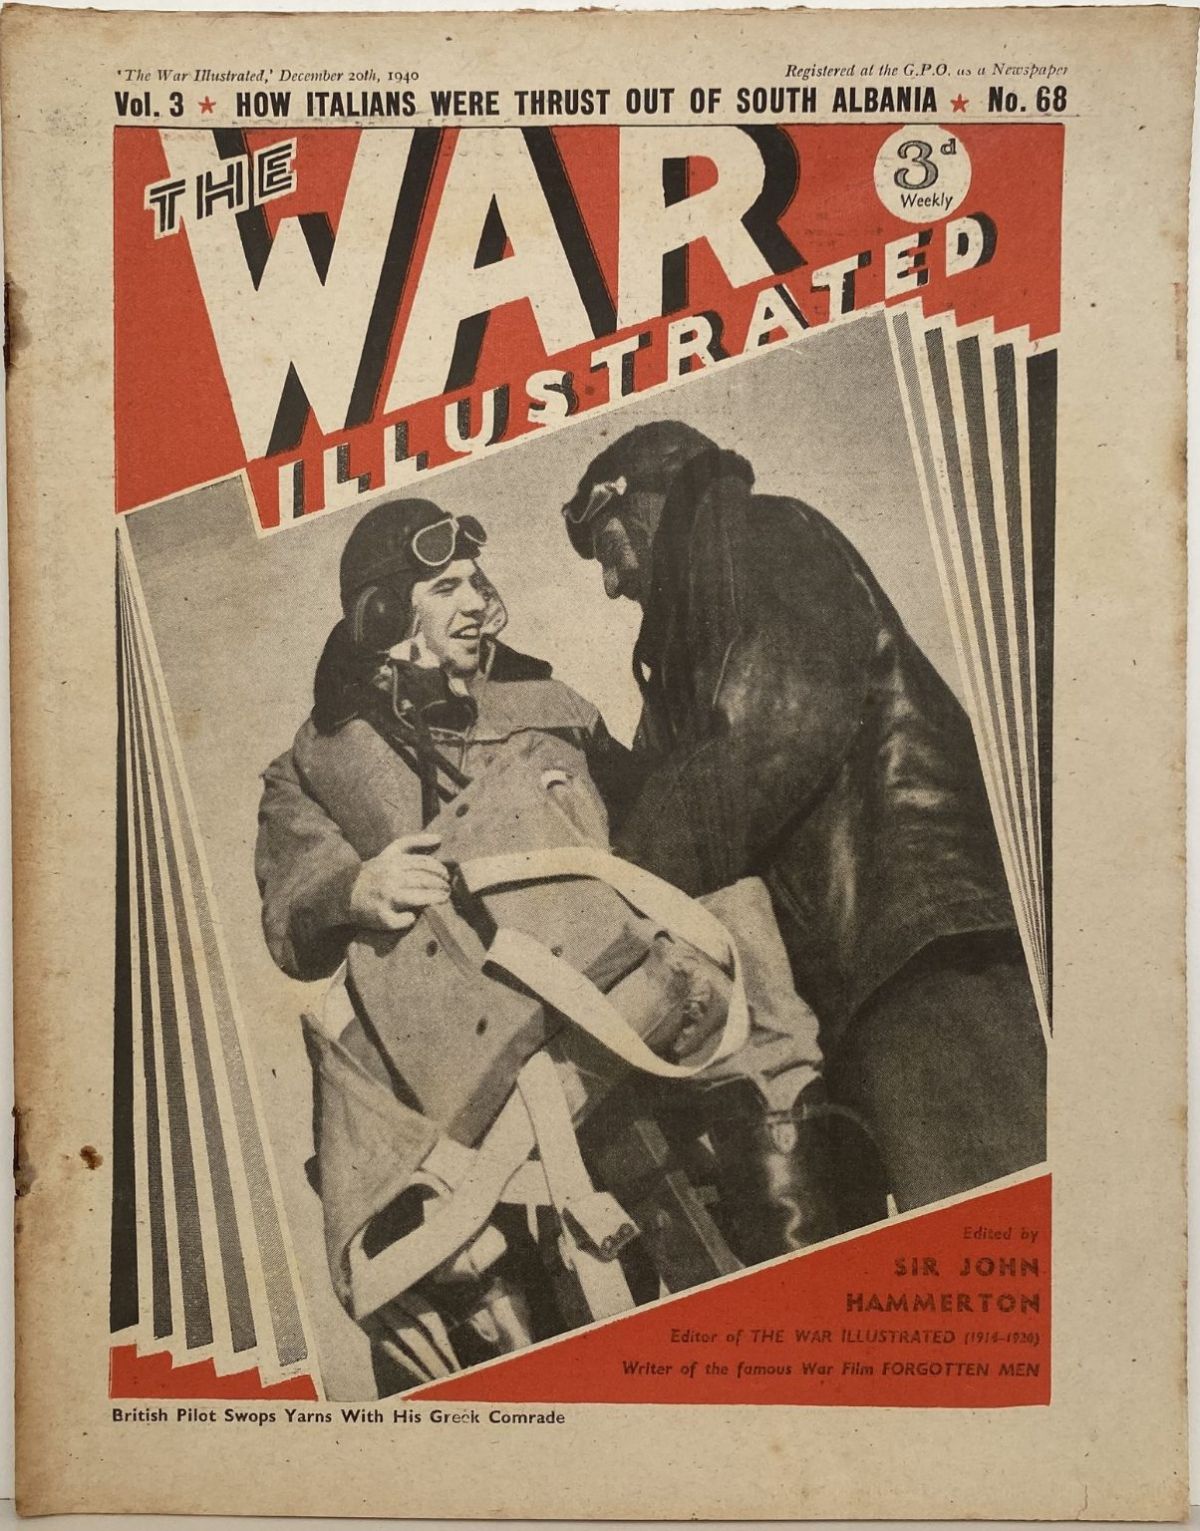 THE WAR ILLUSTRATED - Vol 3, No 68, 20th Dec 1940